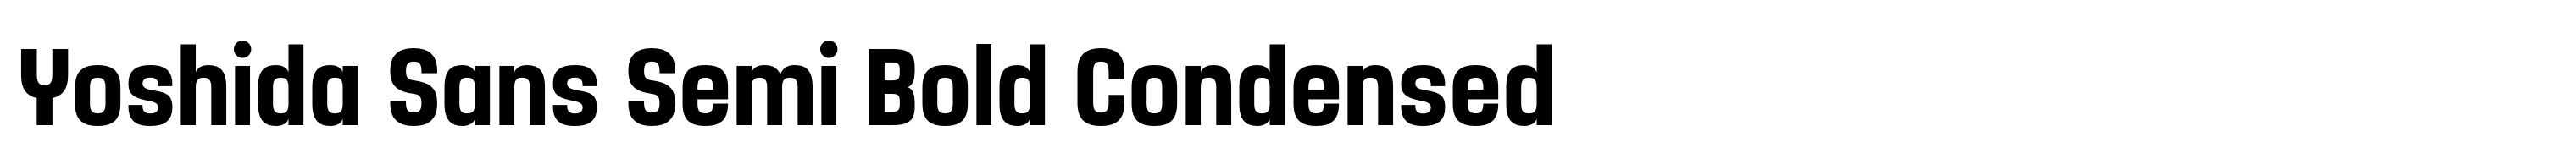 Yoshida Sans Semi Bold Condensed